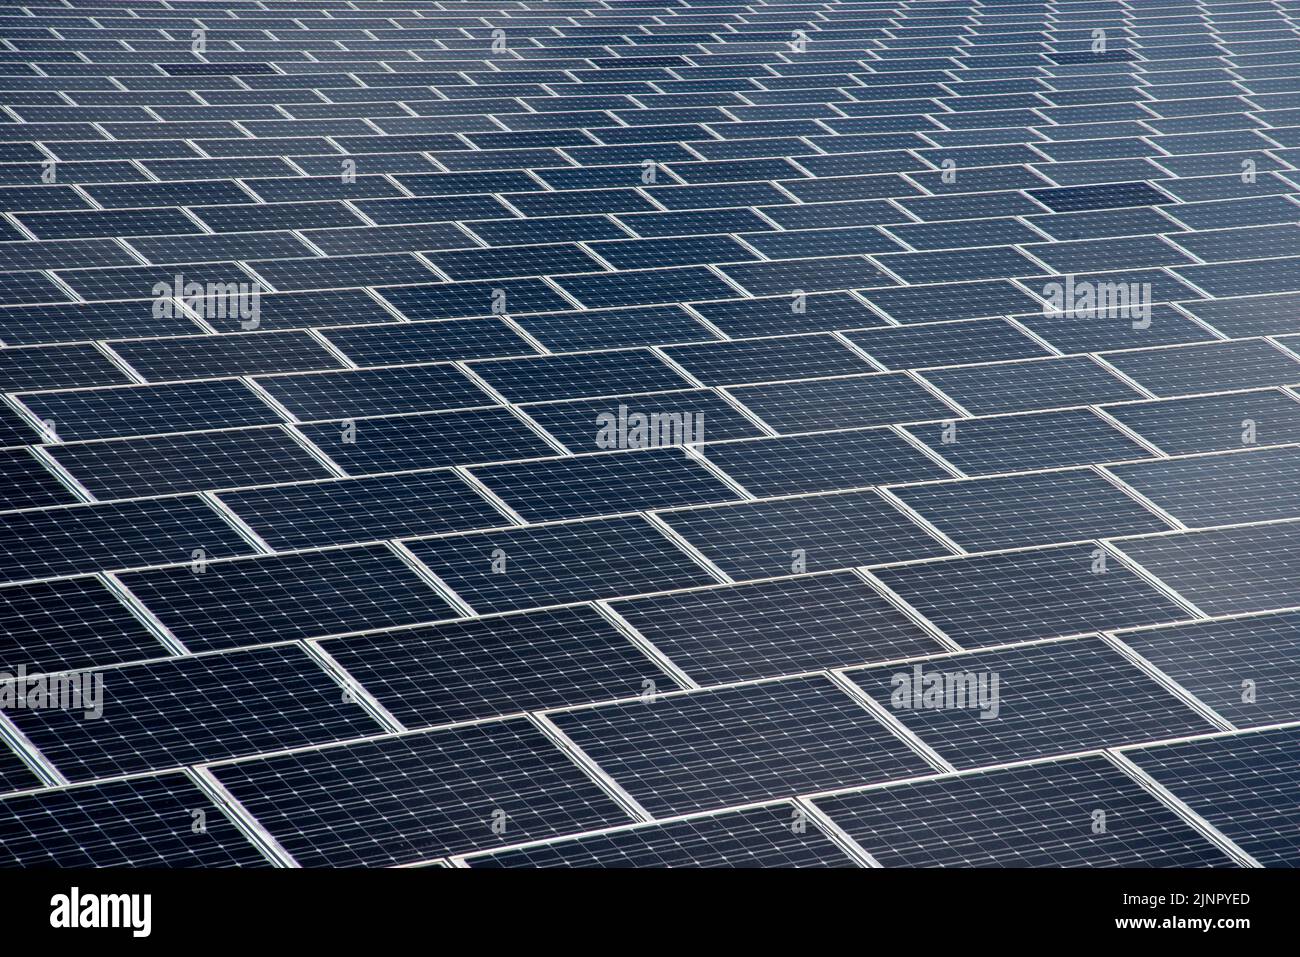 Oberfläche von Sonnenkollektoren. Hintergrund des Photovoltaik-Solarzellen-Energieparks zur Erzeugung sauberer erneuerbarer Energie aus den Sonnenstrahlen Stockfoto